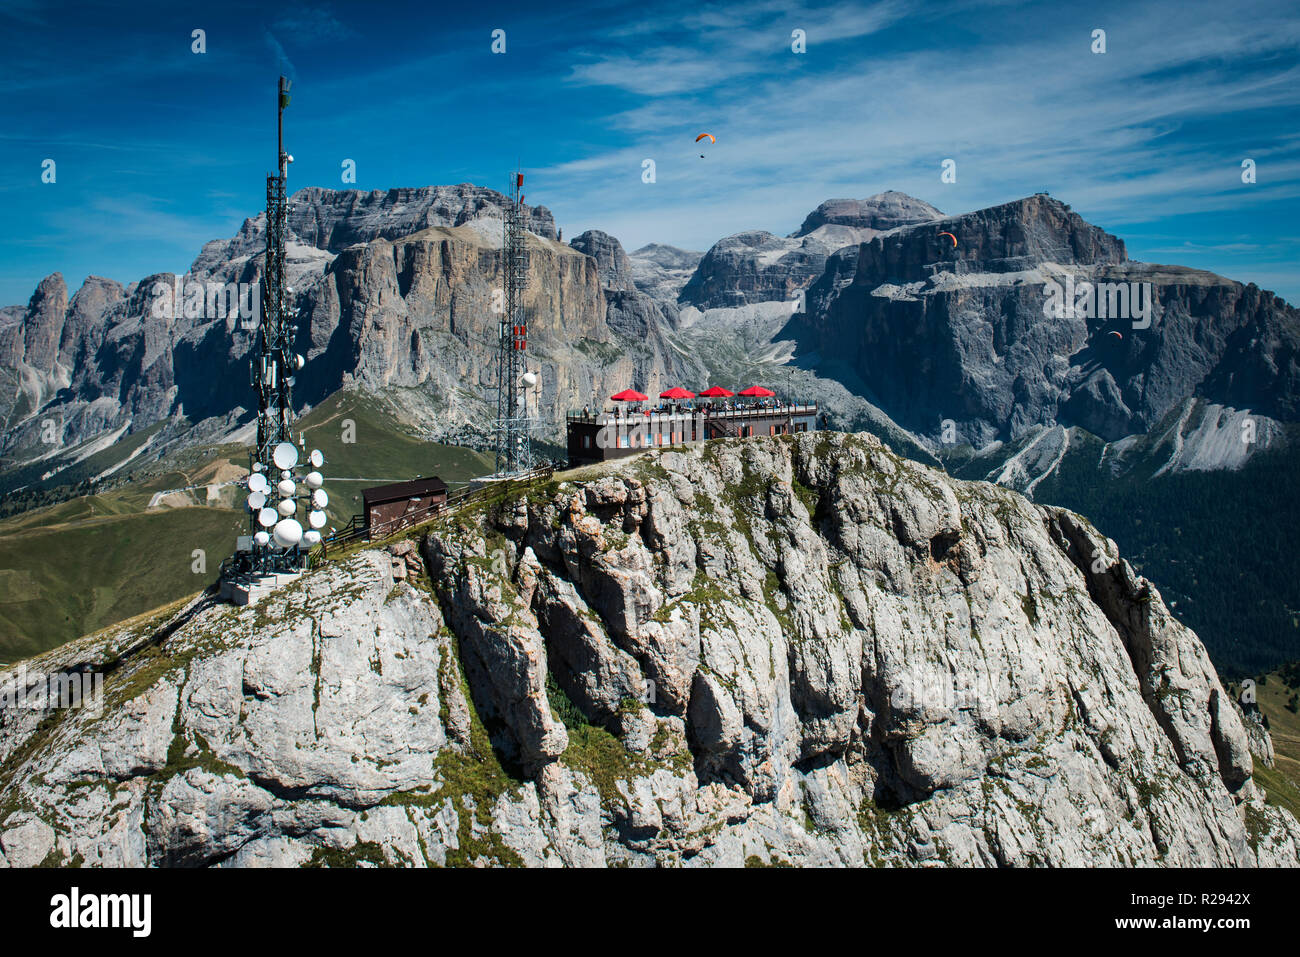 Col Rodella, Paragliders, Dolomites, Sella Group, Campitello di Fassa, Trentino, Italy Stock Photo